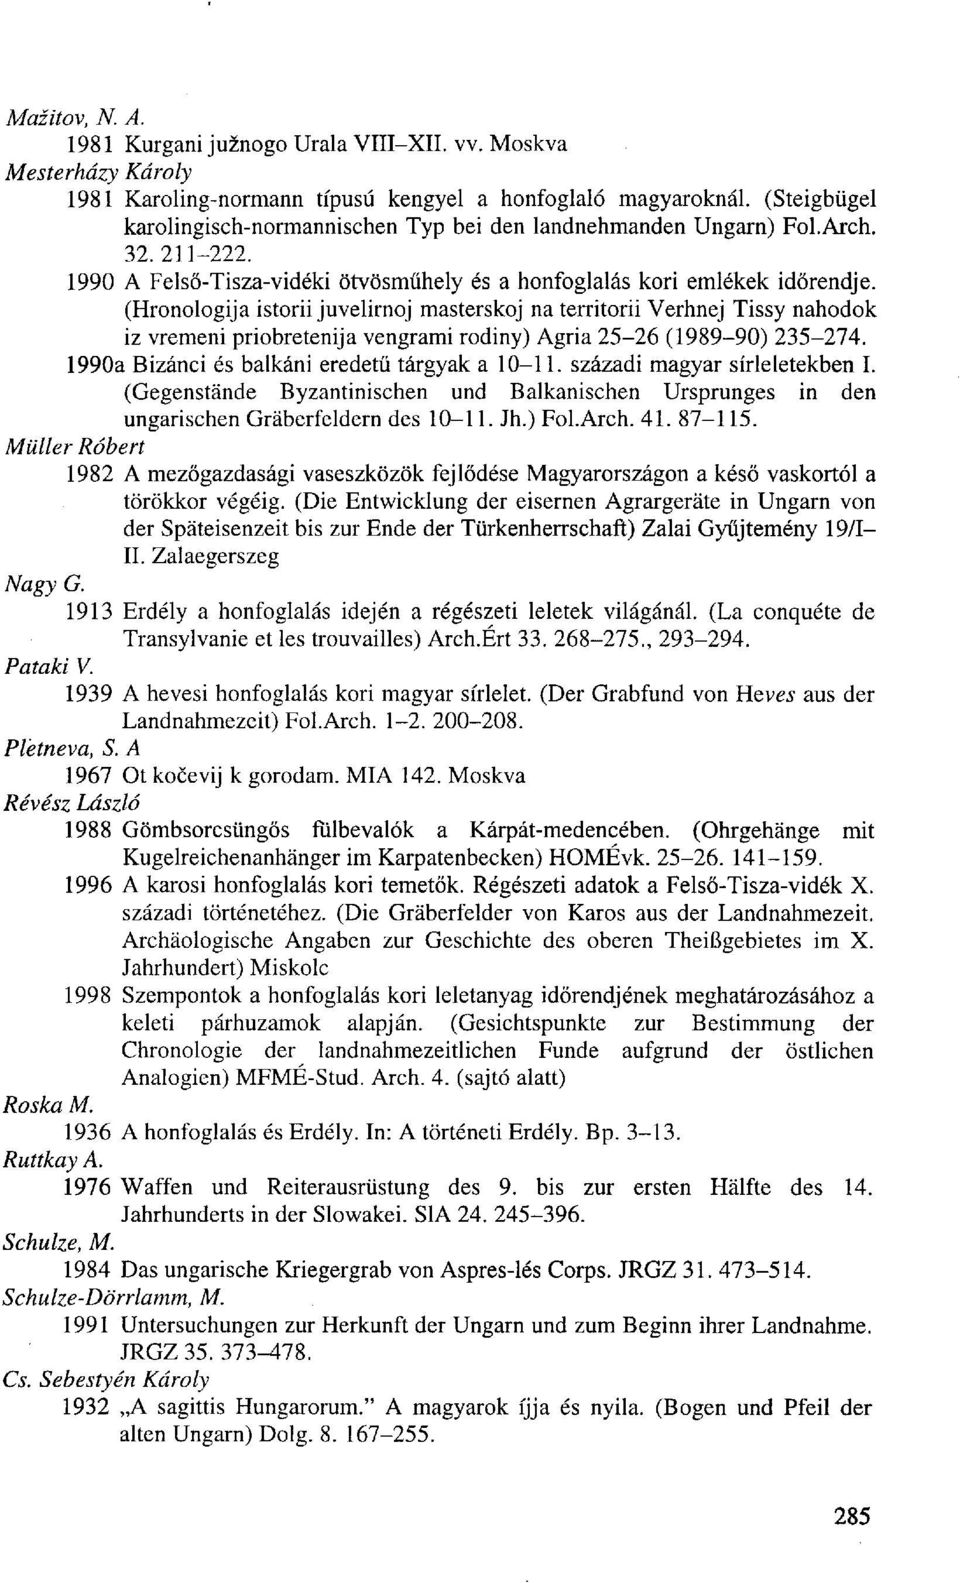 (Hronologija istorii juvelirnoj masterskoj na territorii Verhnej Tissy nahodok iz vremeni priobretenija vengrami rodiny) Agria 25-26 (1989-90) 235-274.